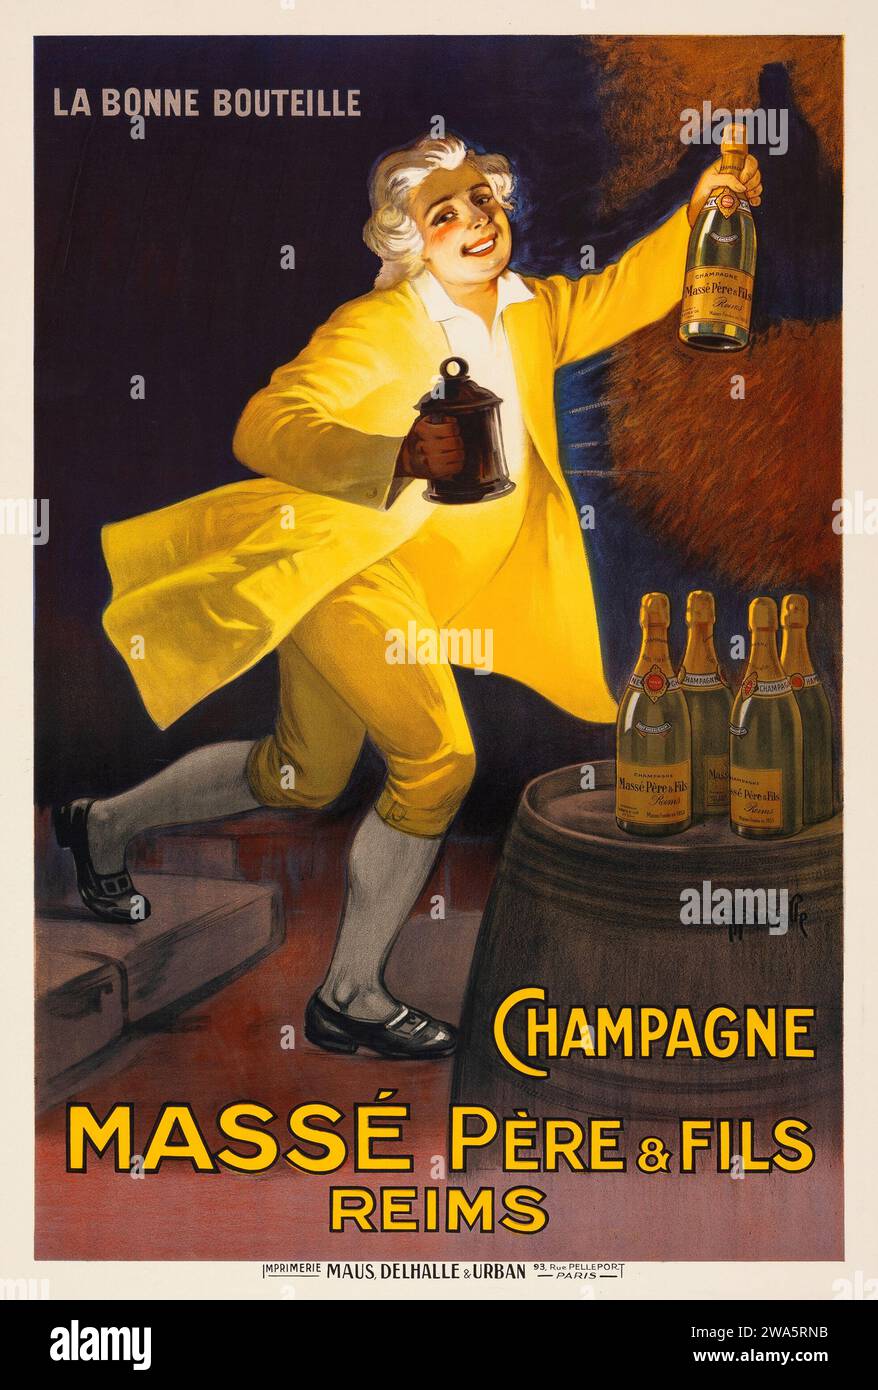 Champagne Massé Père & Fils, Reims, La Bonne Boutelle - Marcellin Auzolle 1862 - 1942 artwork - alcohol advertisement Stock Photo